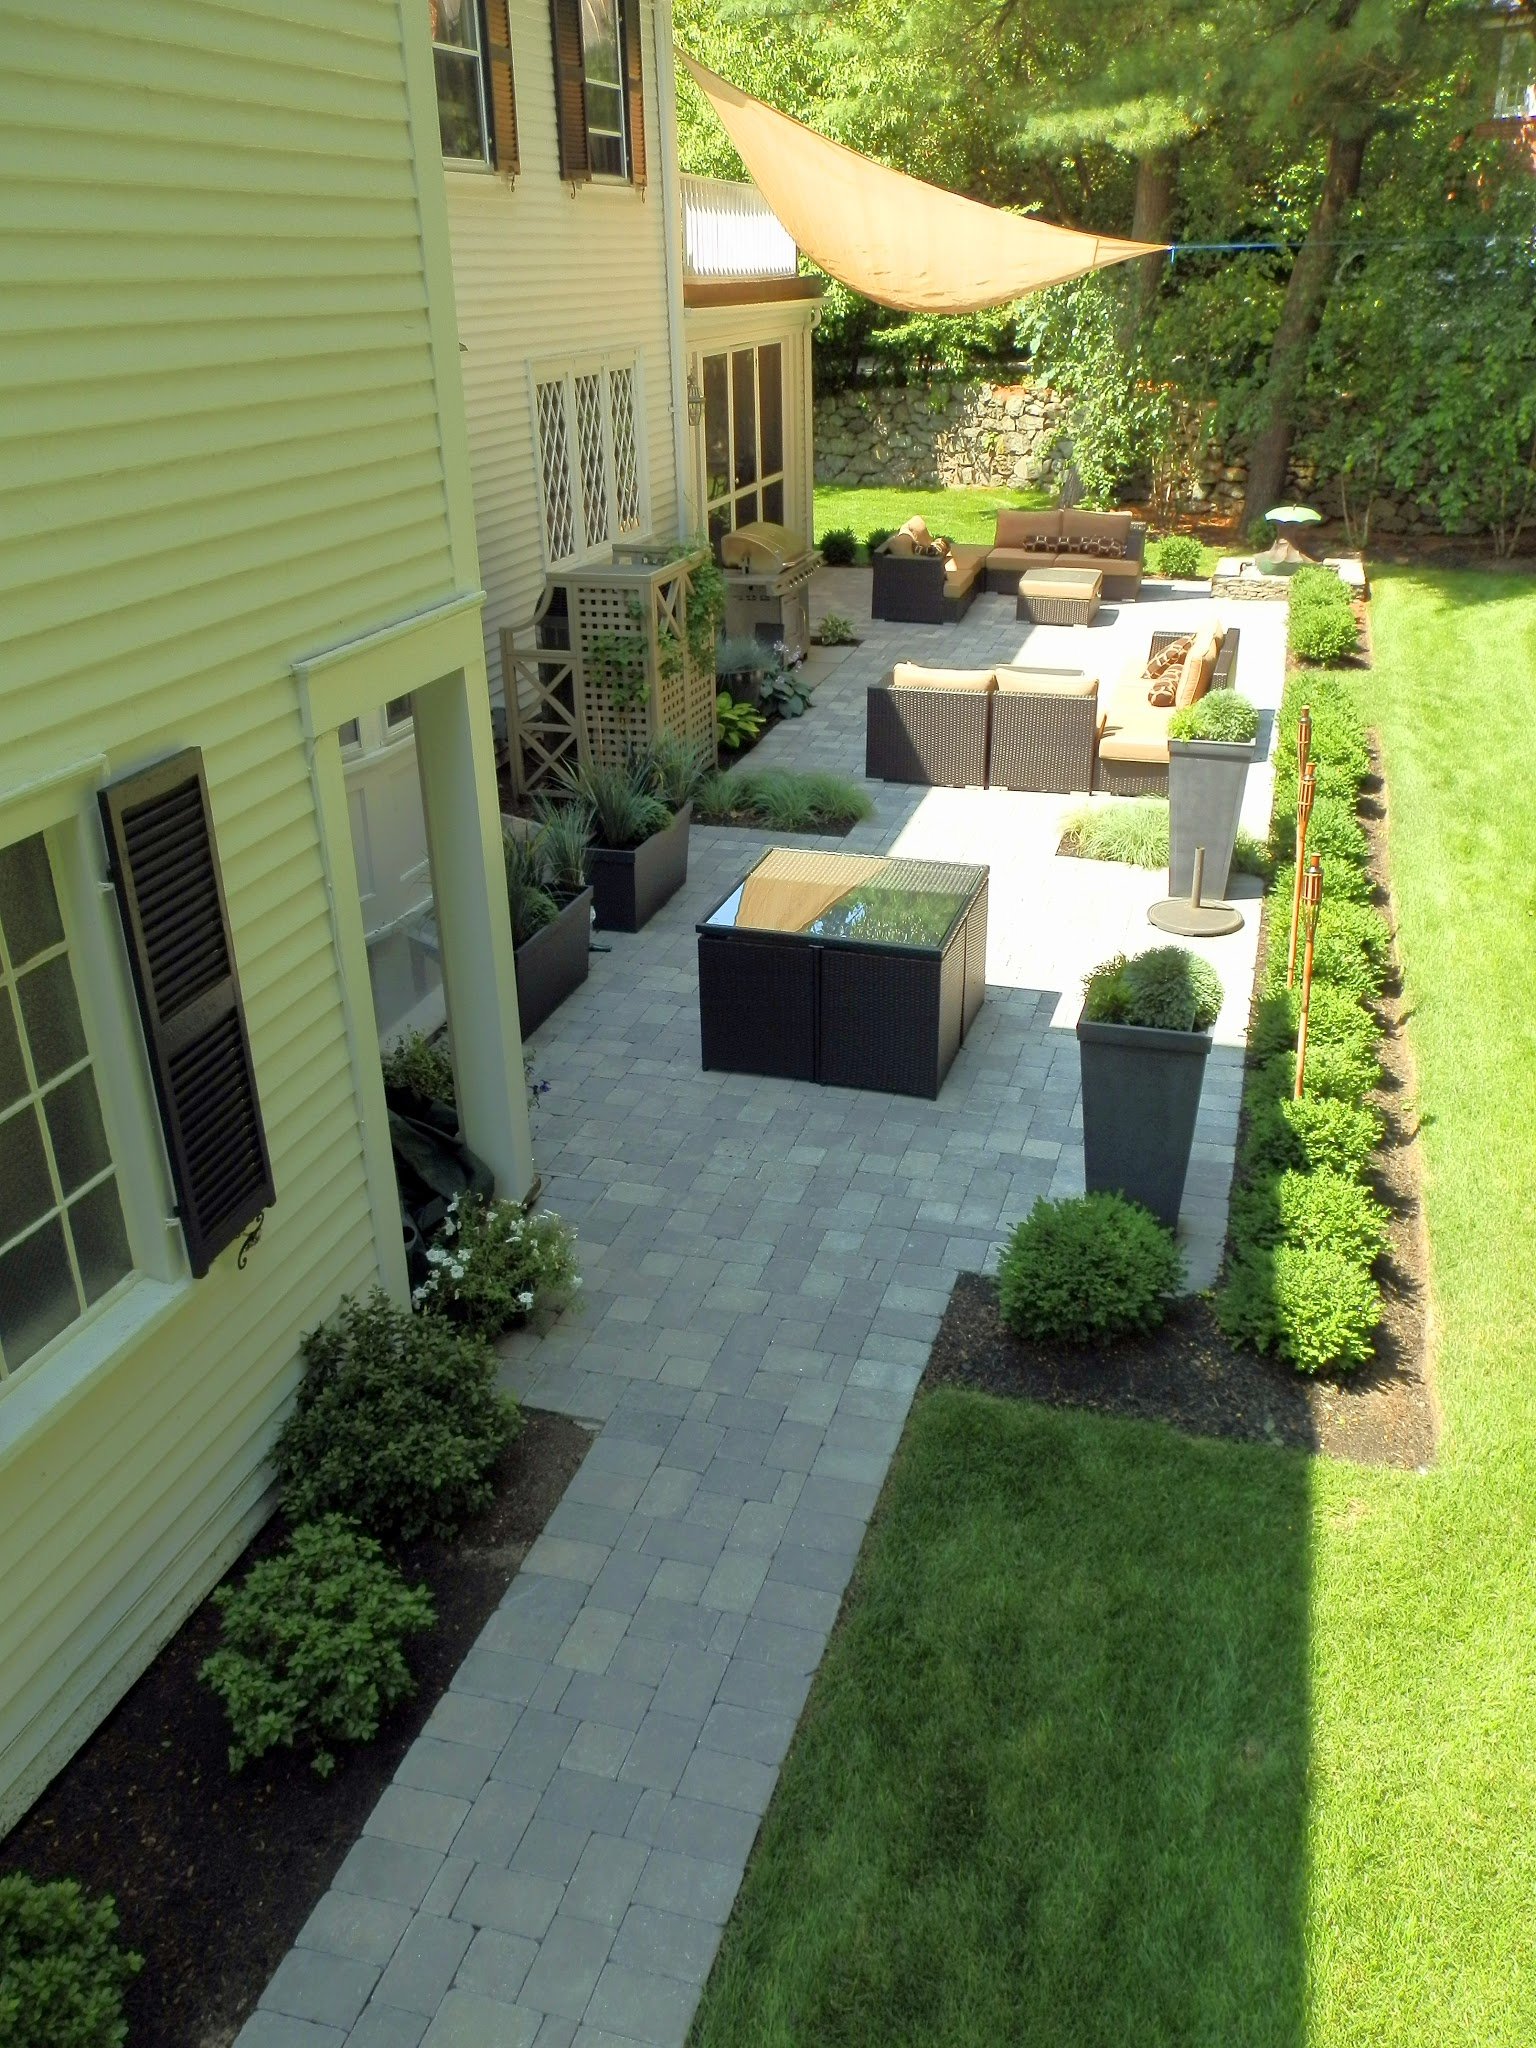 What makes an elegant backyard?